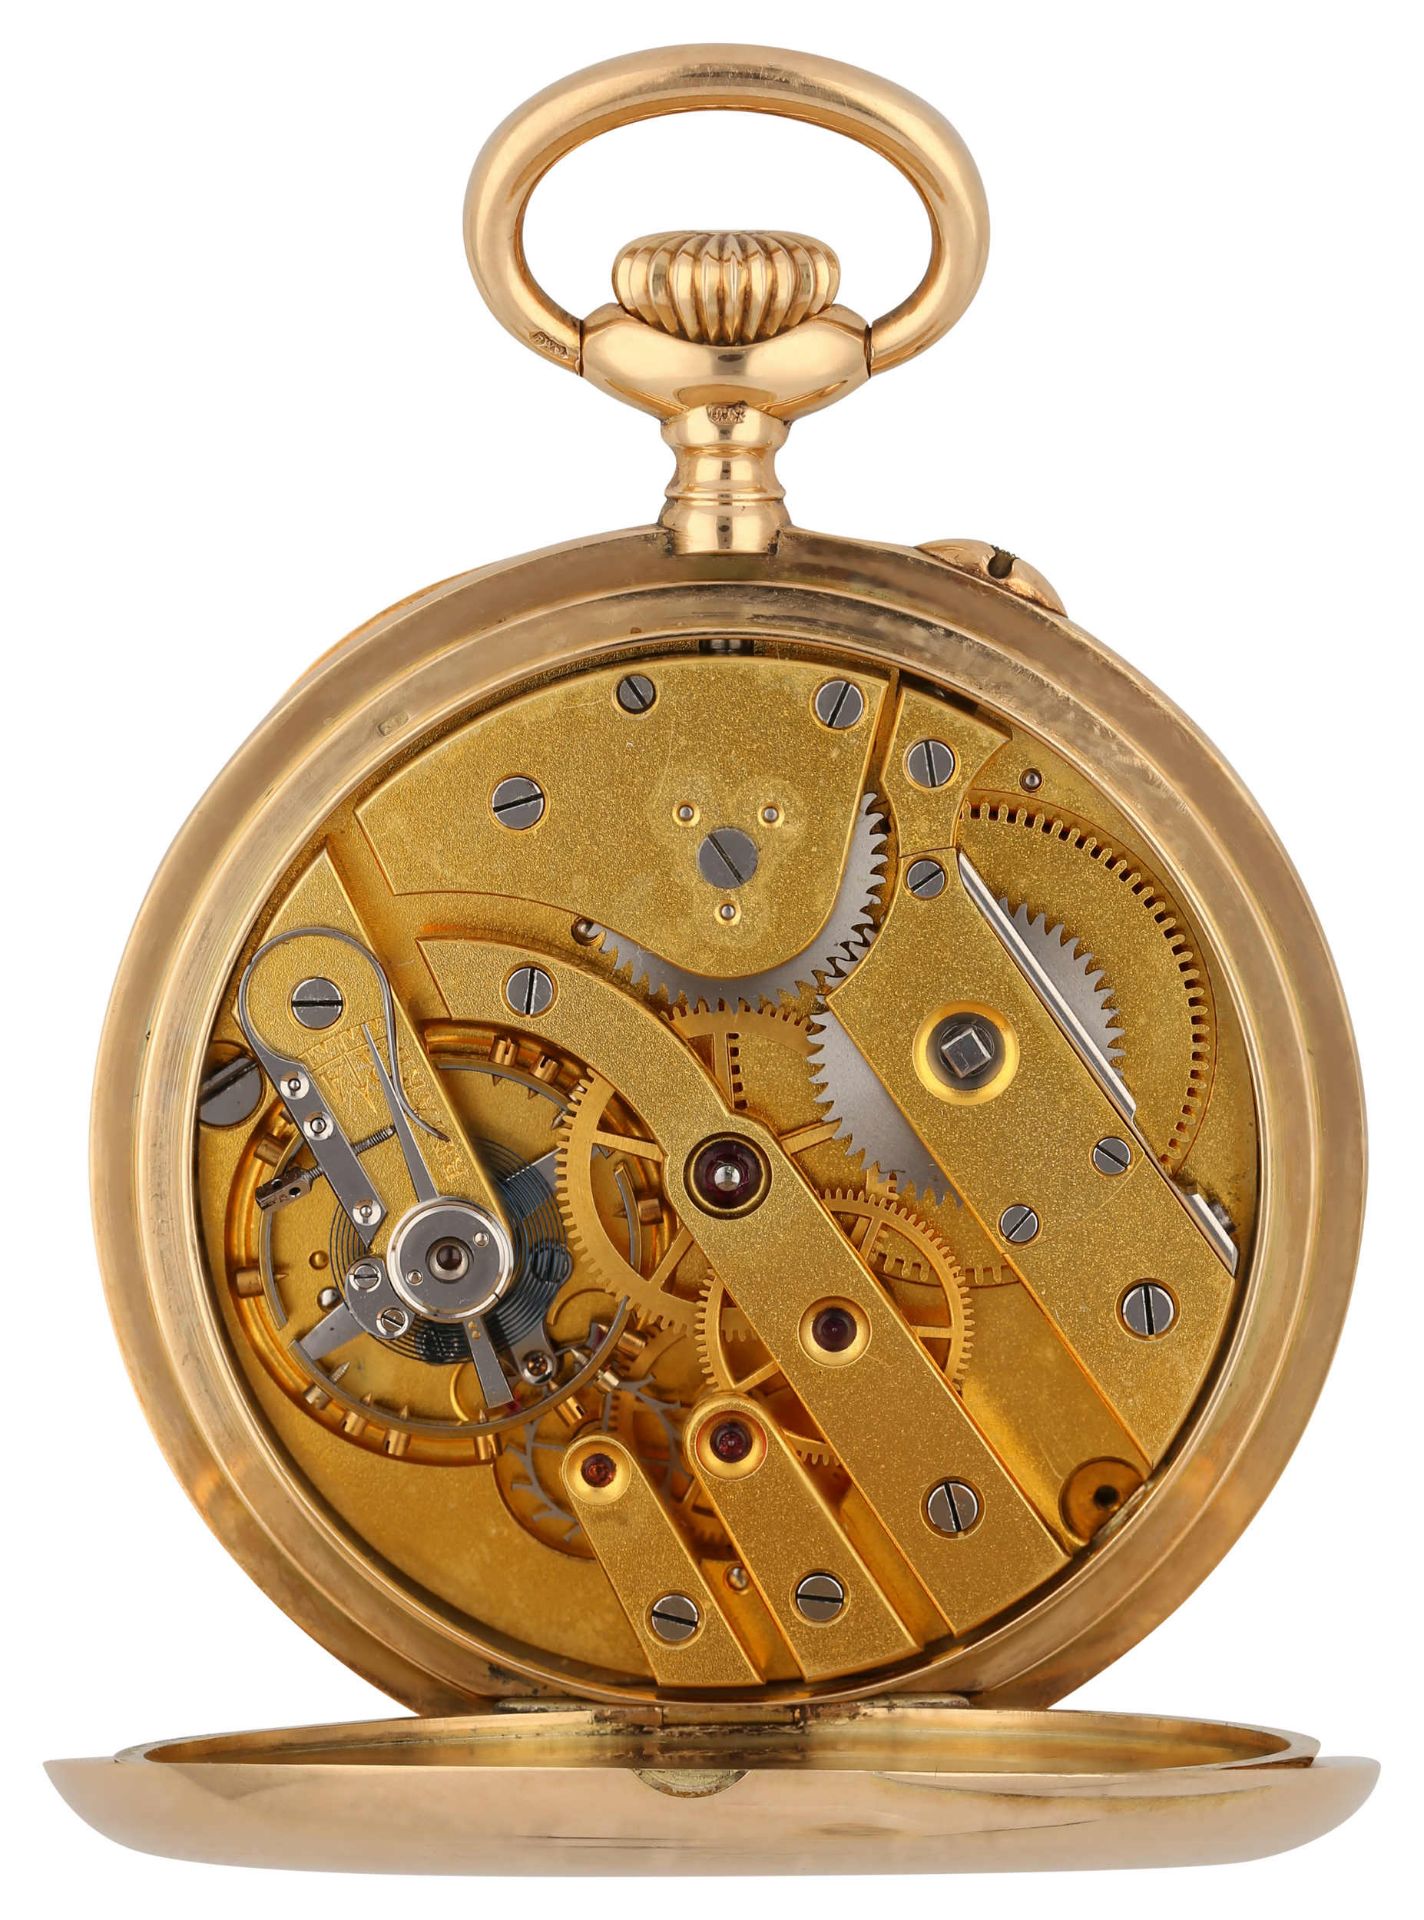 ALEX HÜNING Taschenuhr Modell Genève in Gelbgold 14K. Uhrwerk Handaufzug mit Wolfsverzahnung, - Image 2 of 2